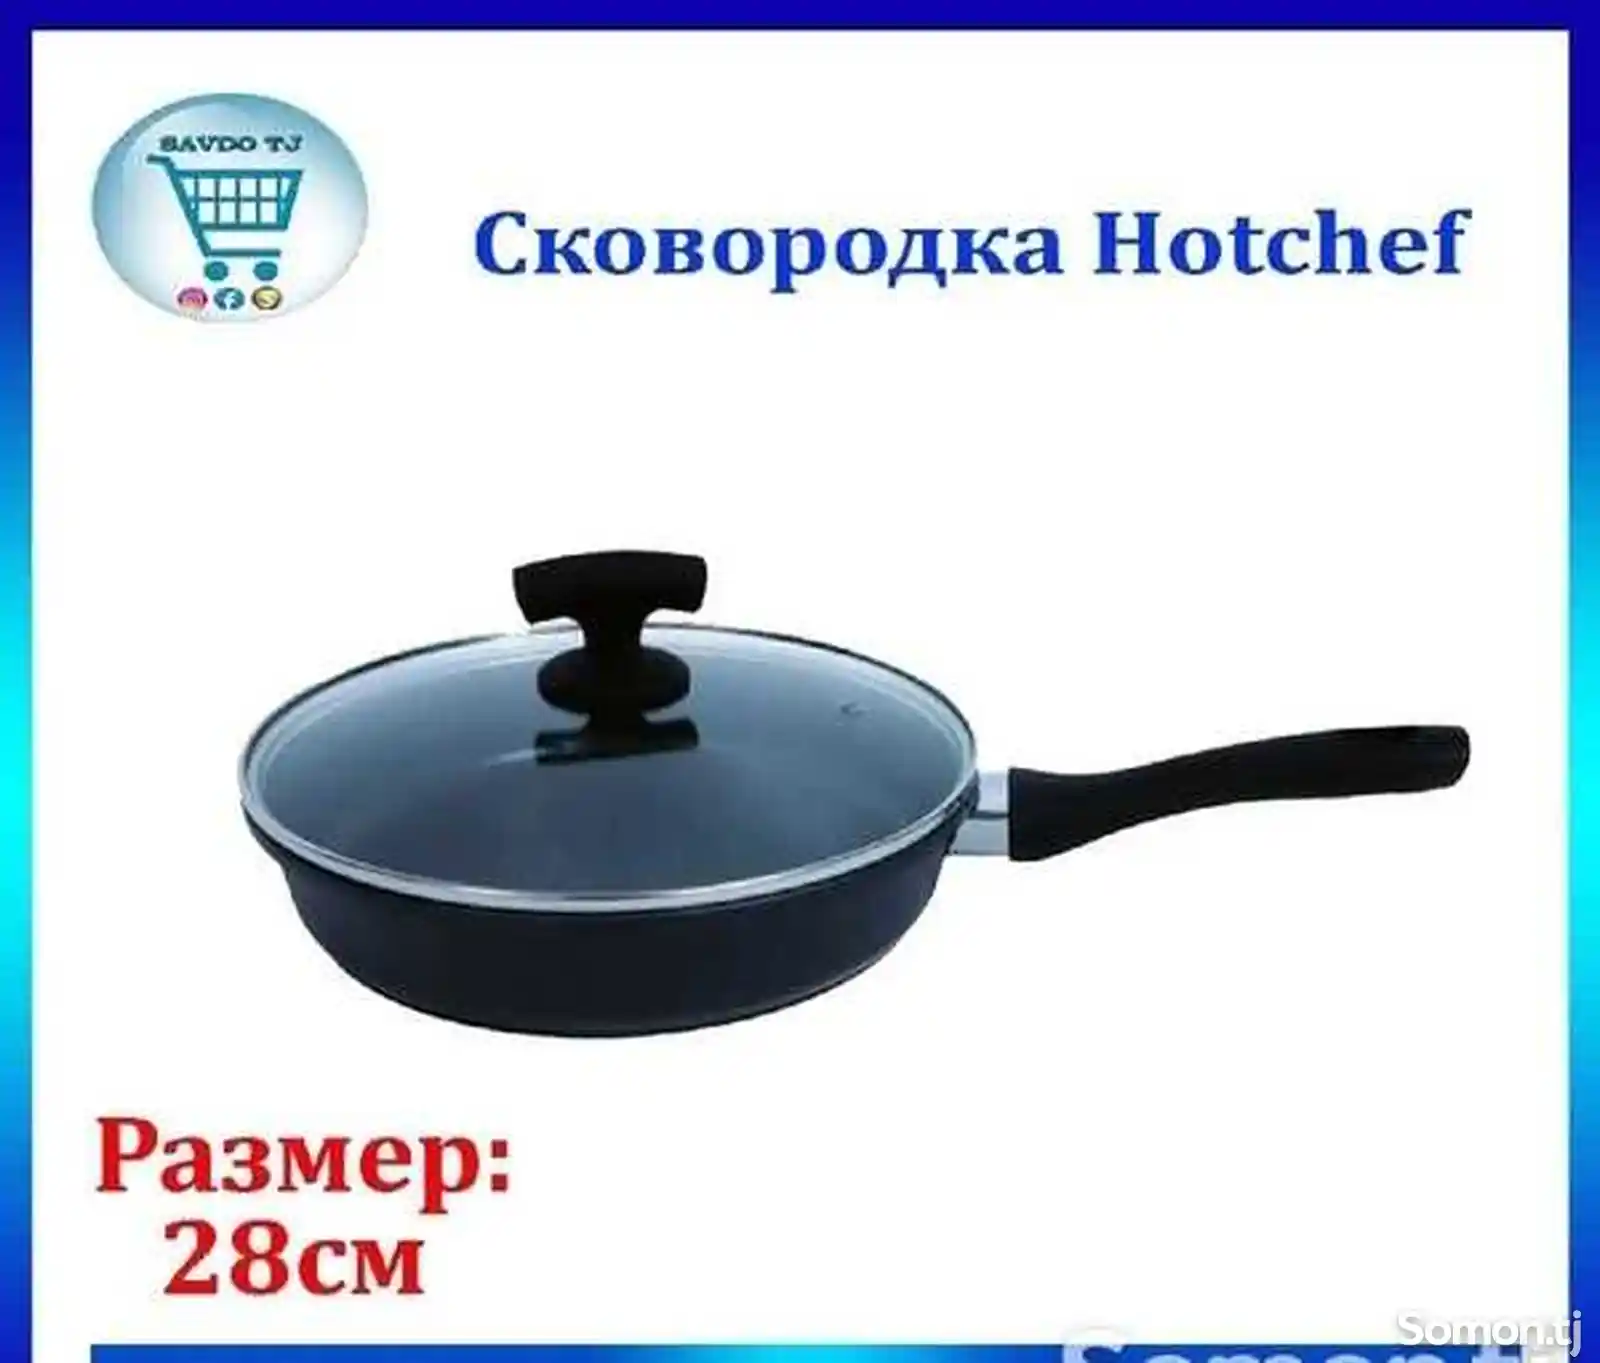 Сковородка Hotchef-3